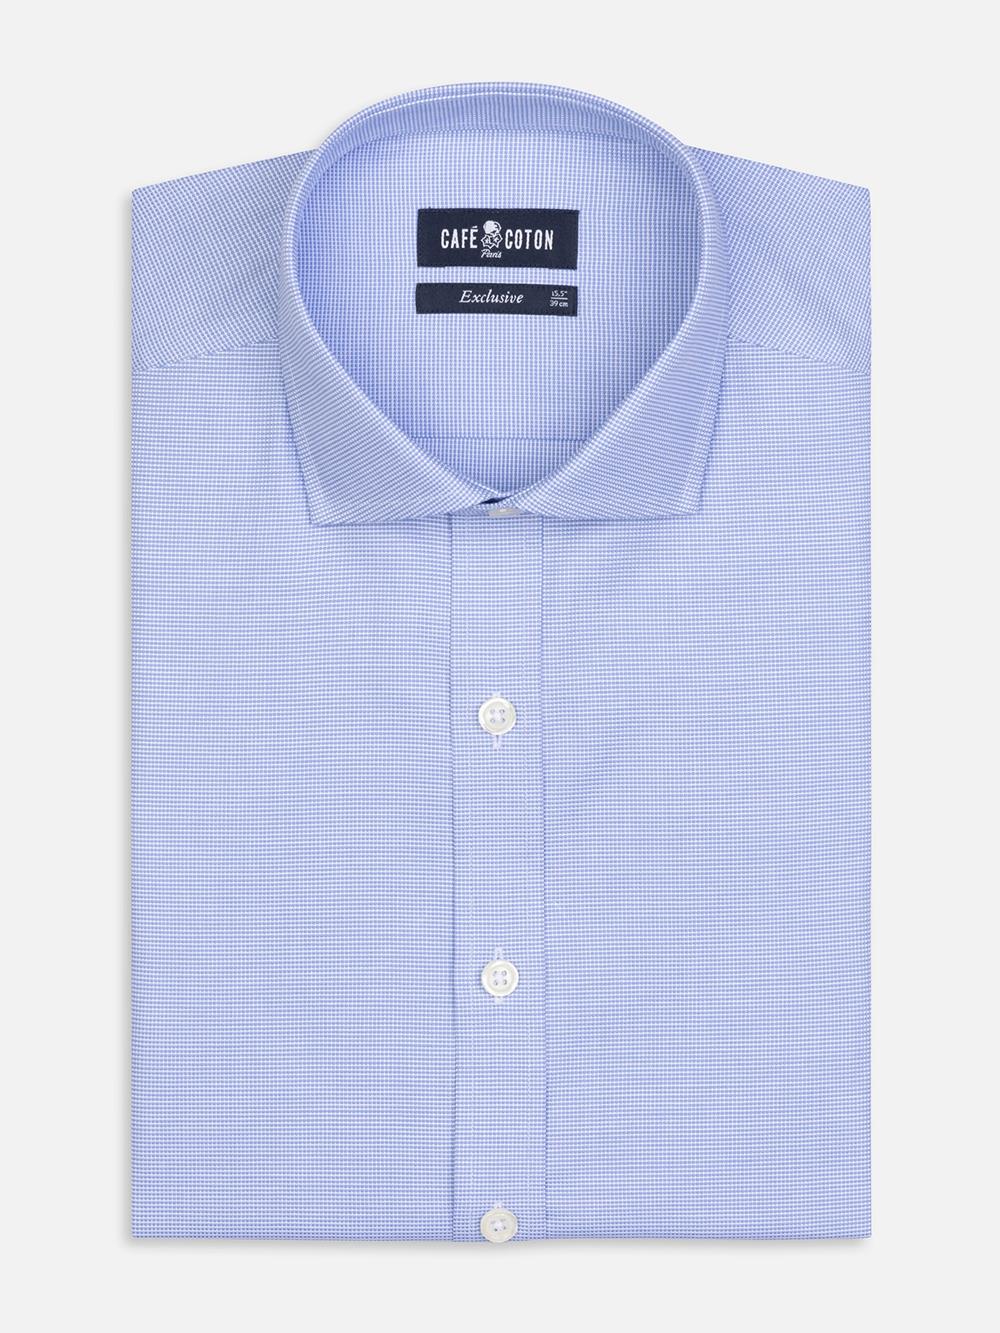 Conan textured shirt - Blue